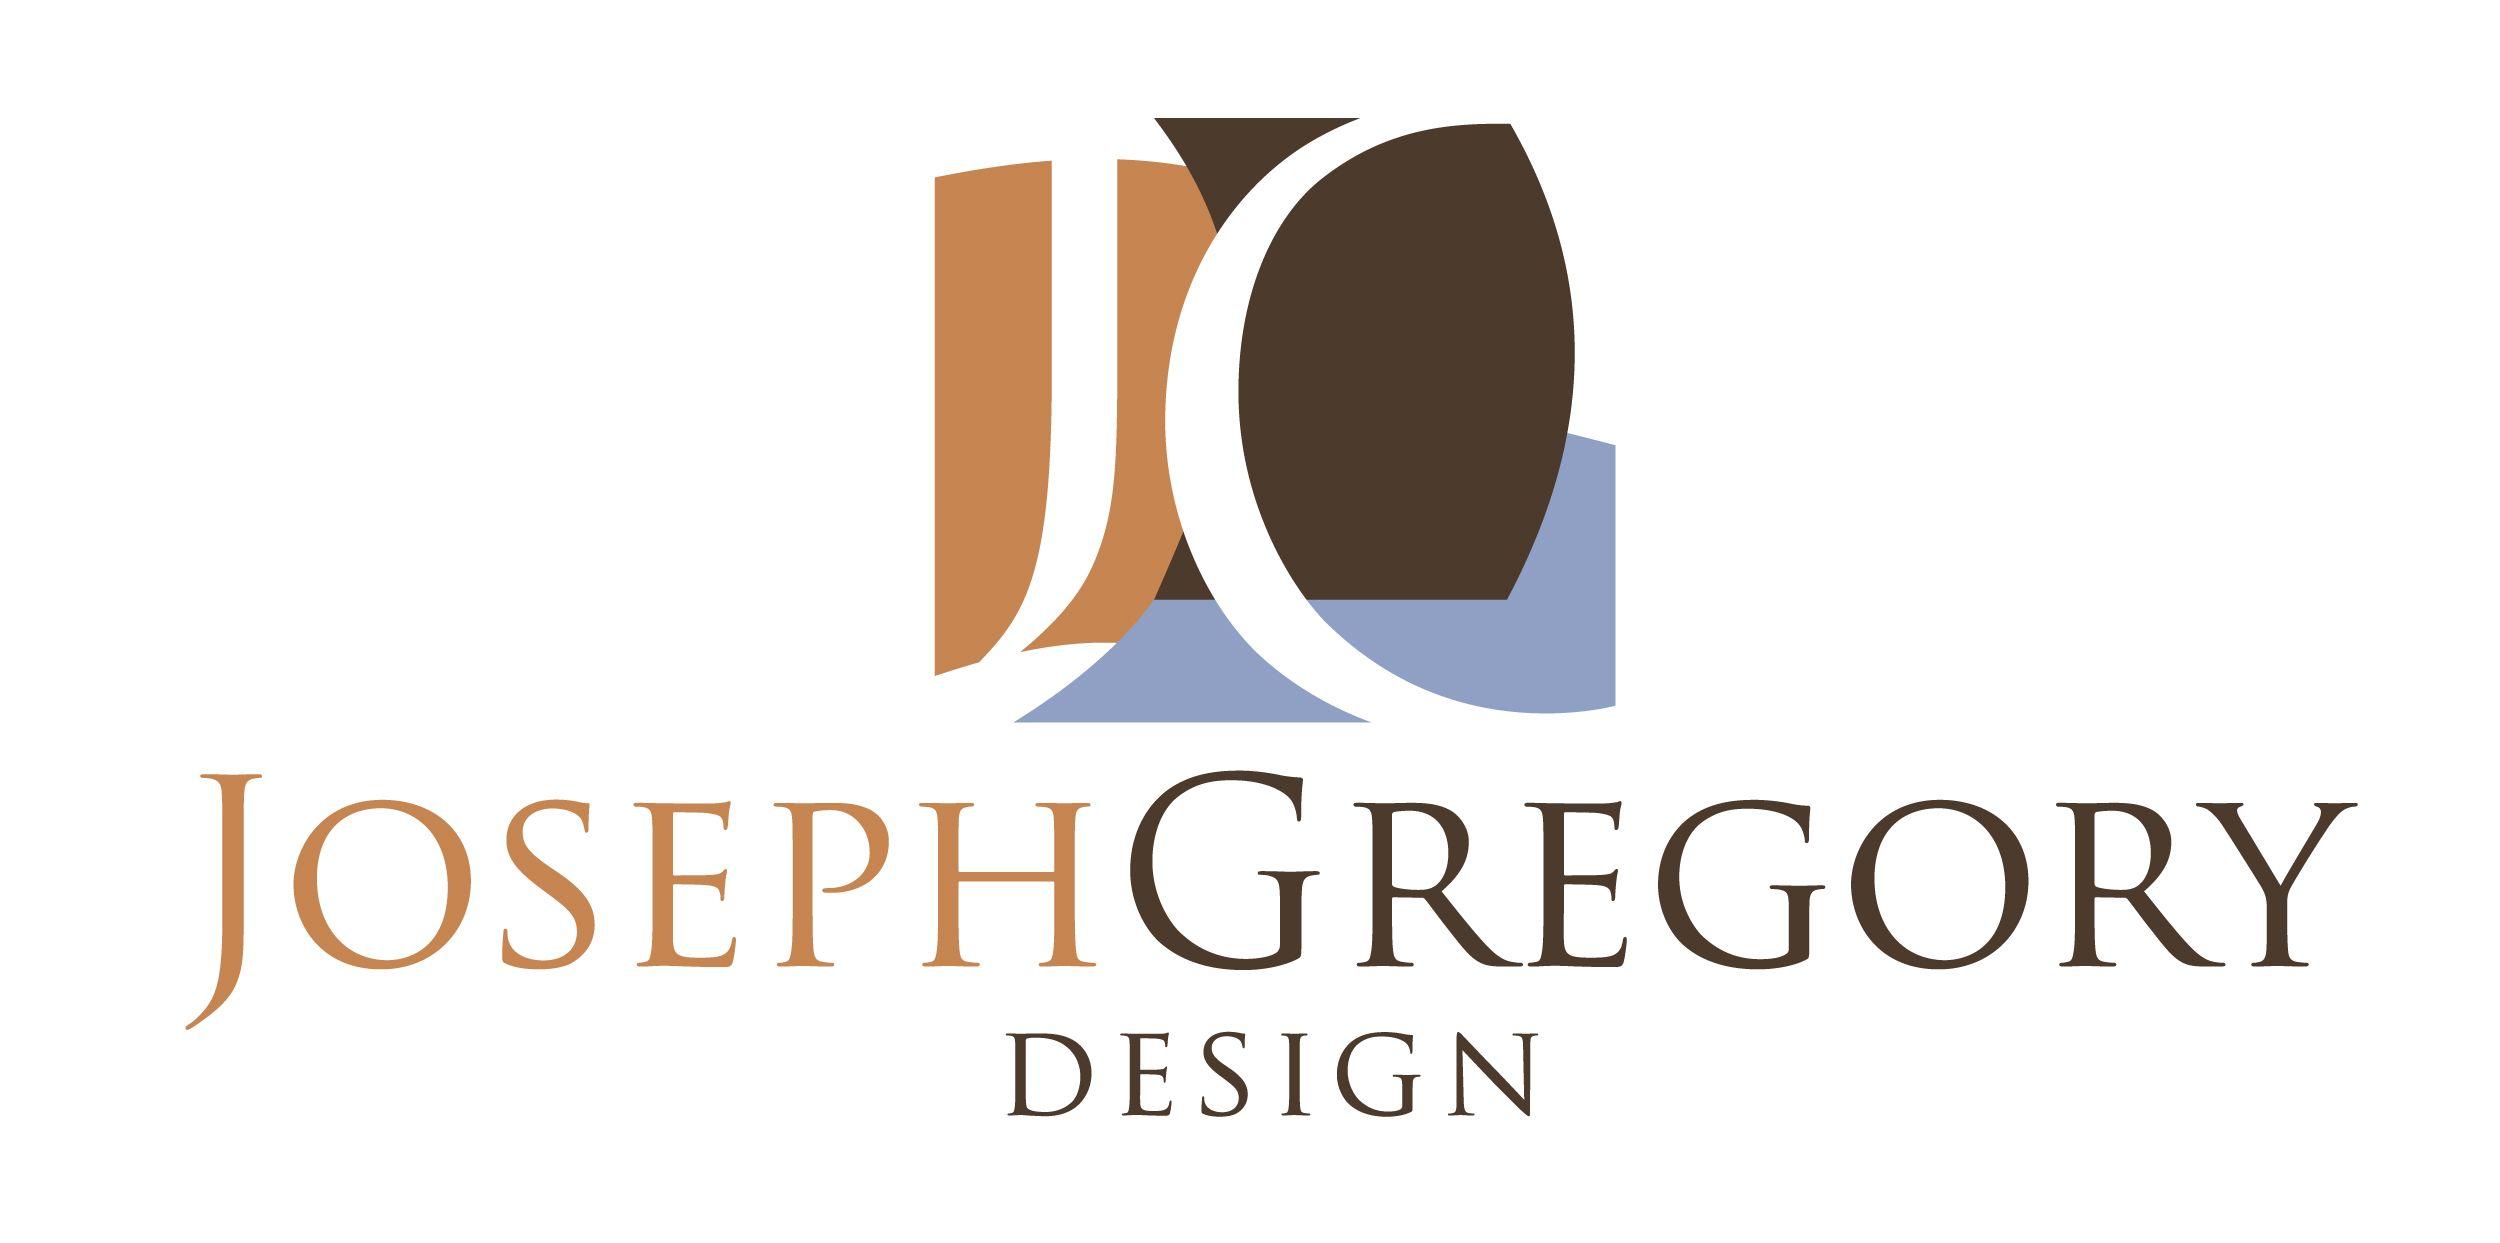 Gregory Logo - Joseph Gregory Design: Graphic Design & Web Design